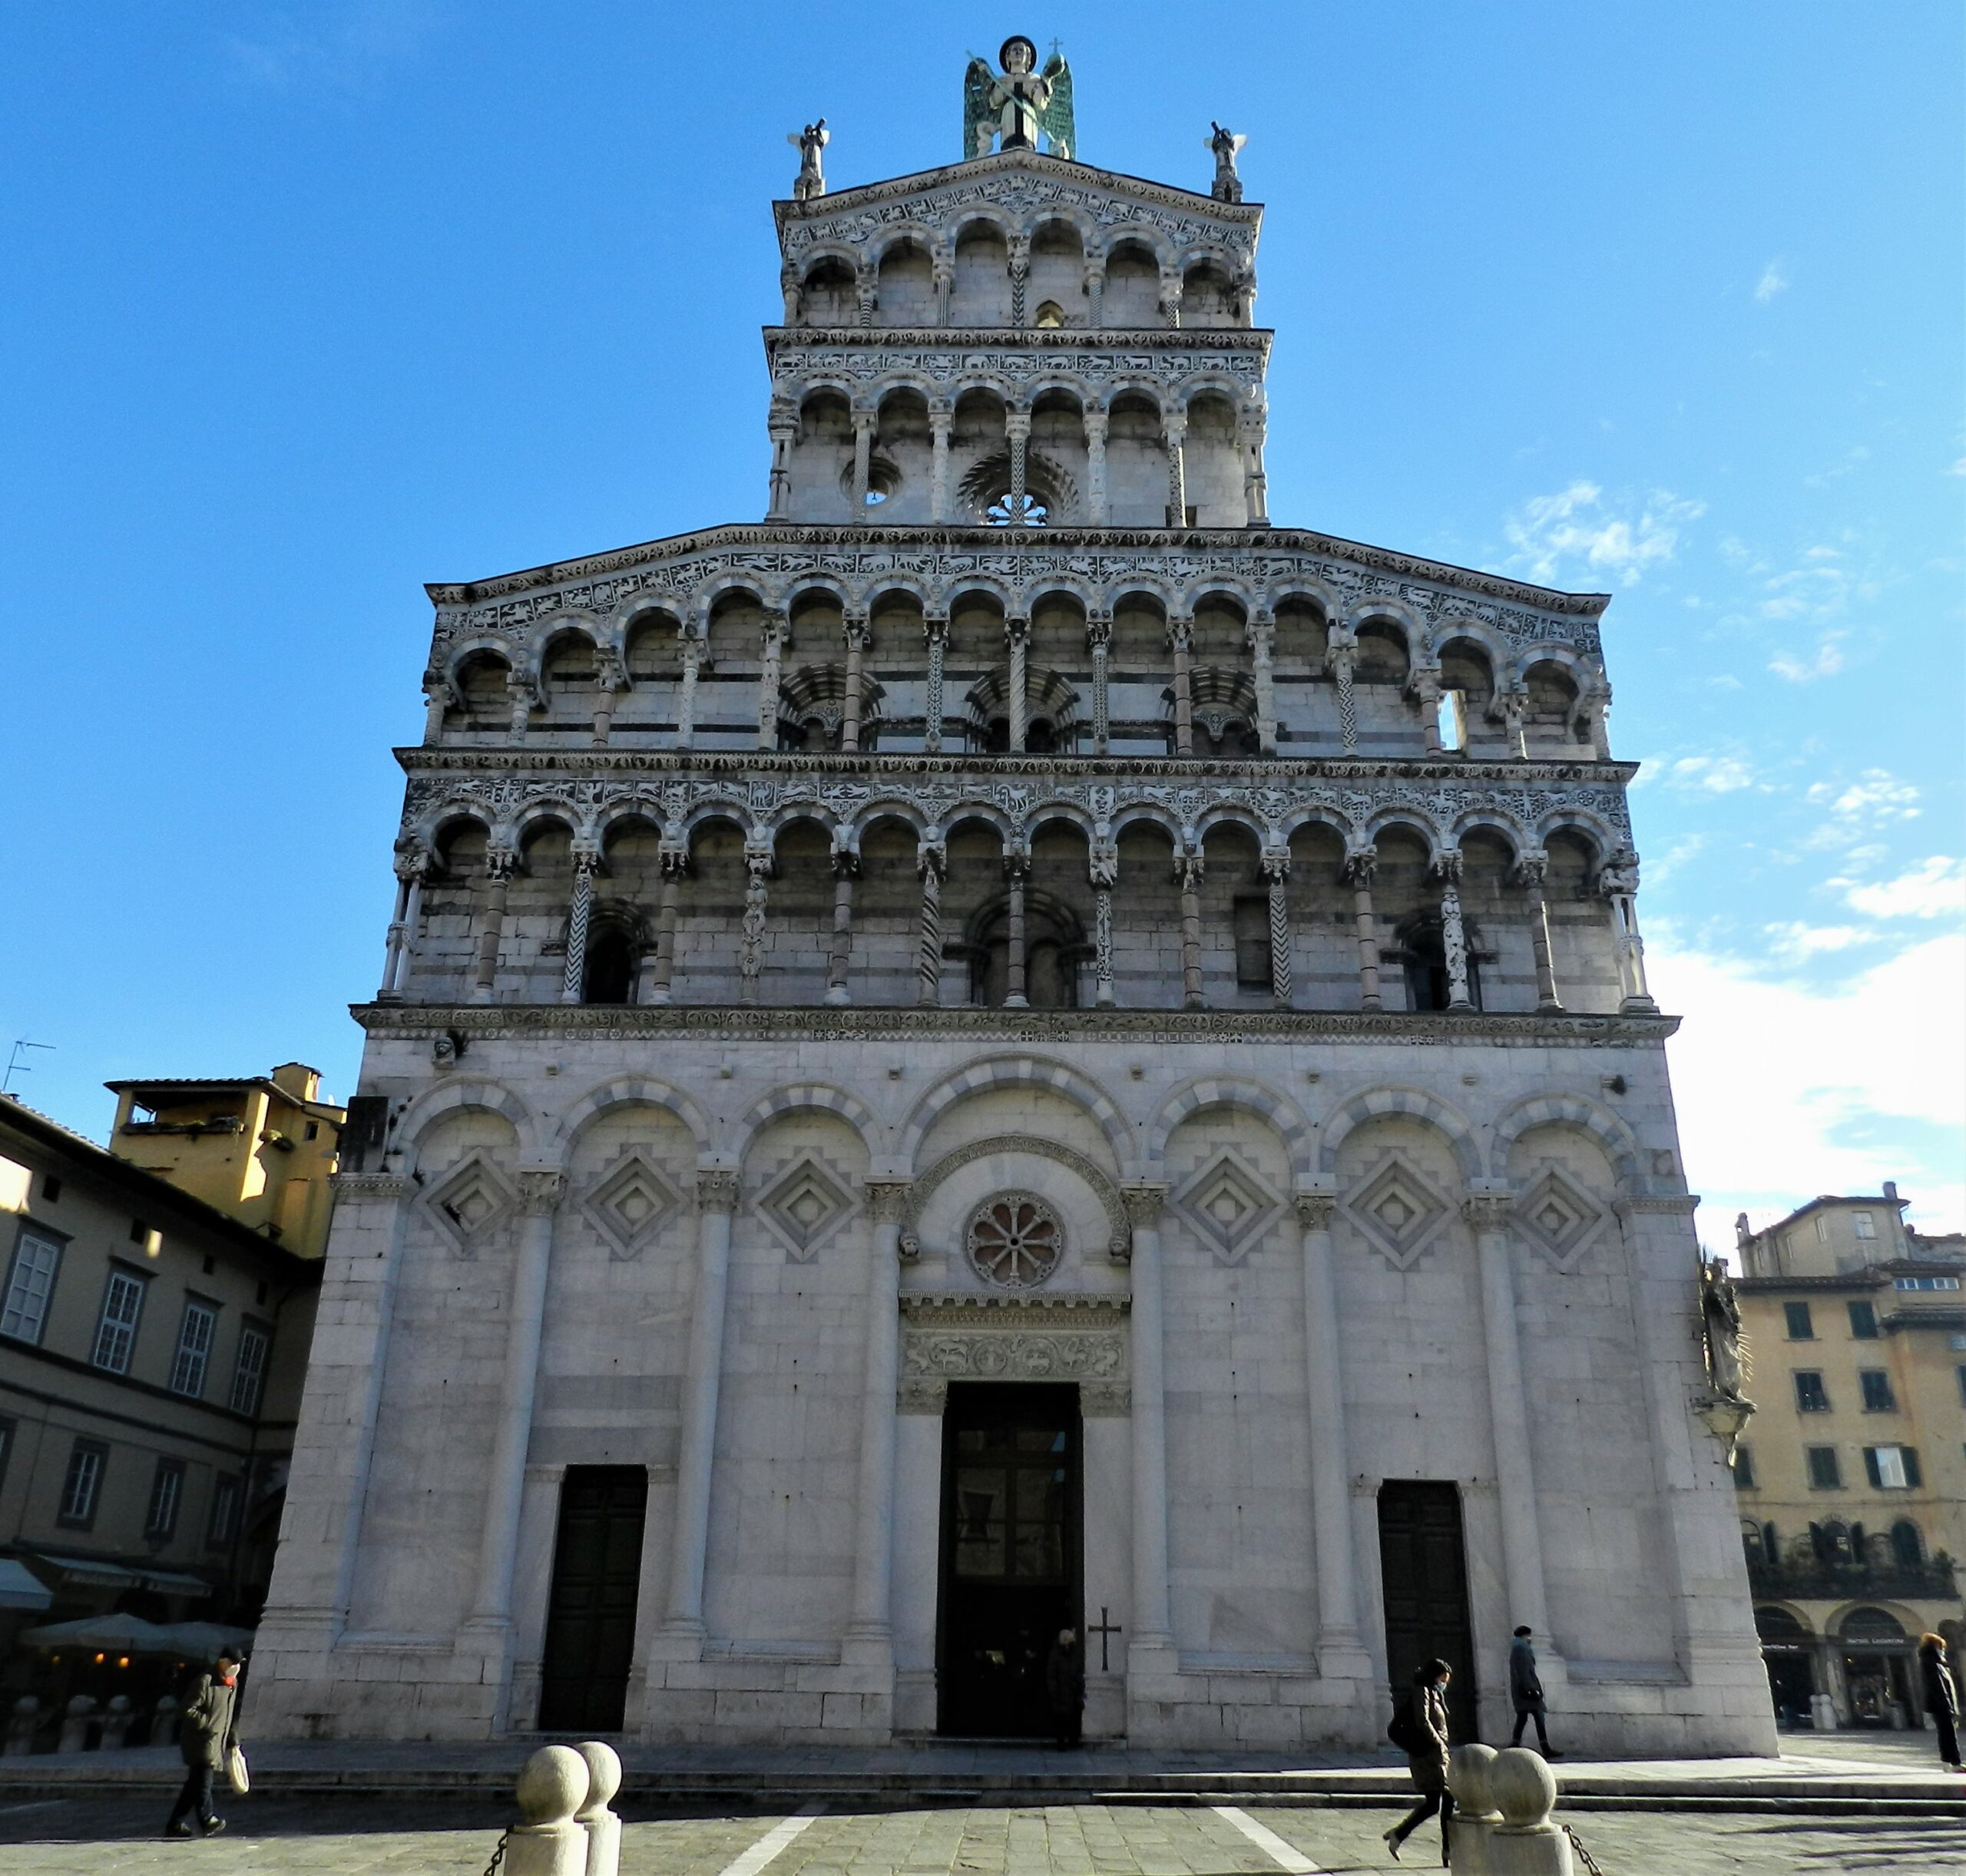 Kościół San Michele in Foro, Św. Michała w Lukka, Toskania, widok fasady